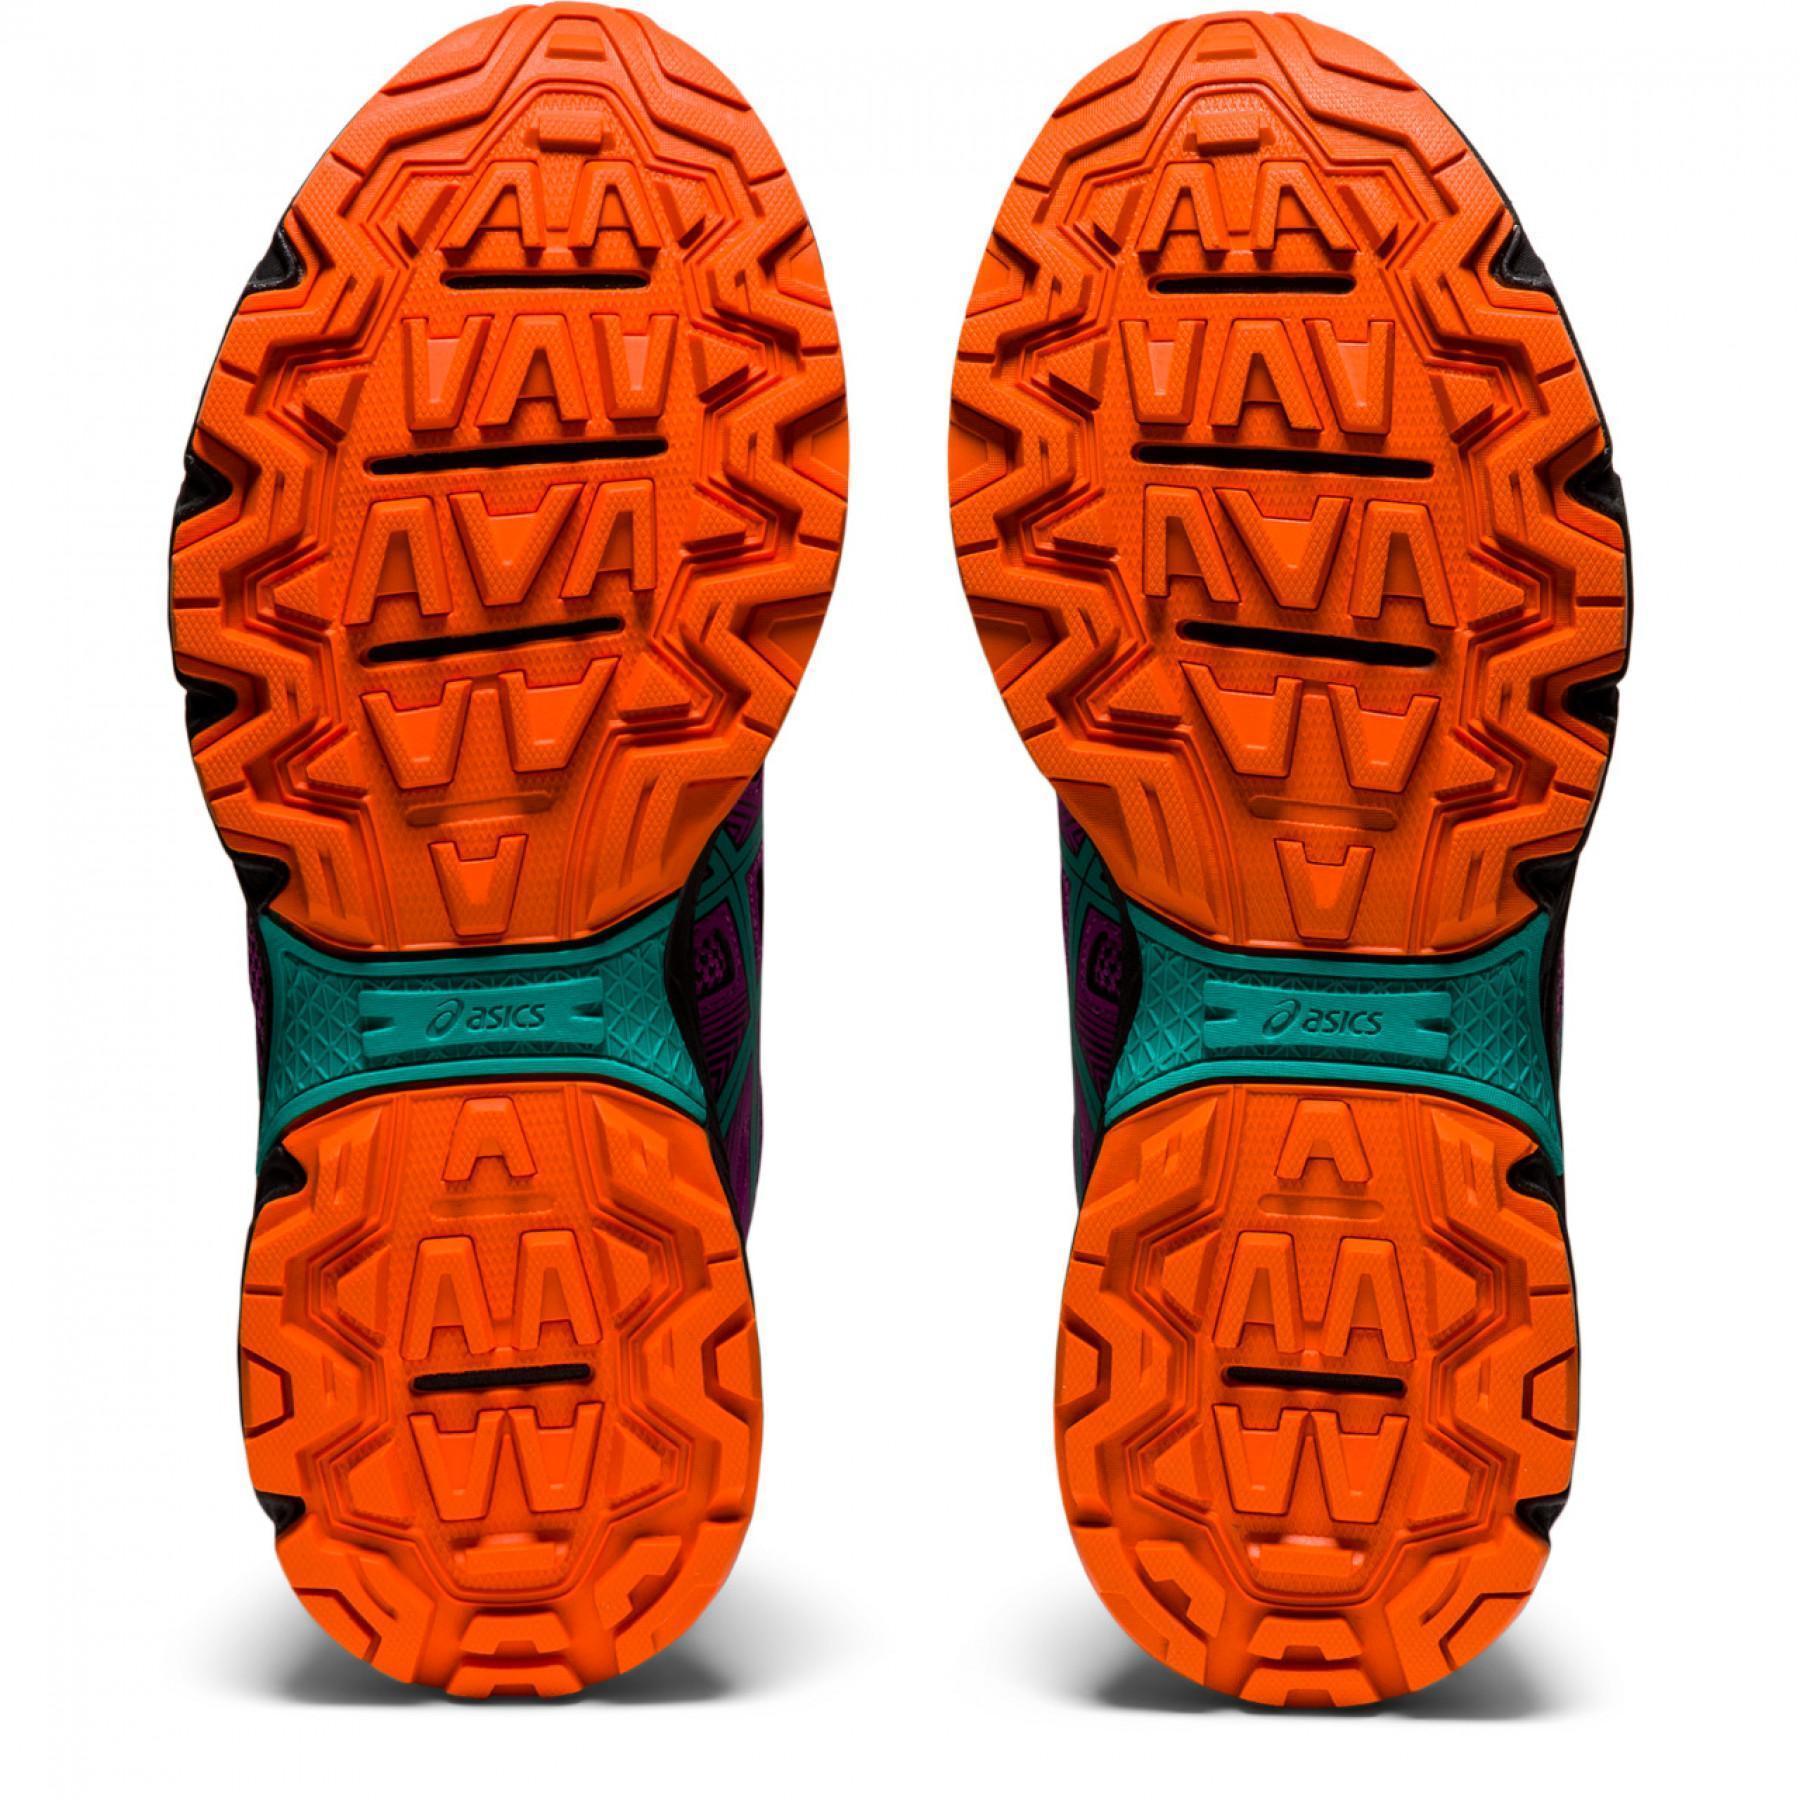 Trailrunning-Schuhe für Frauen Asics Gel-Venture 8